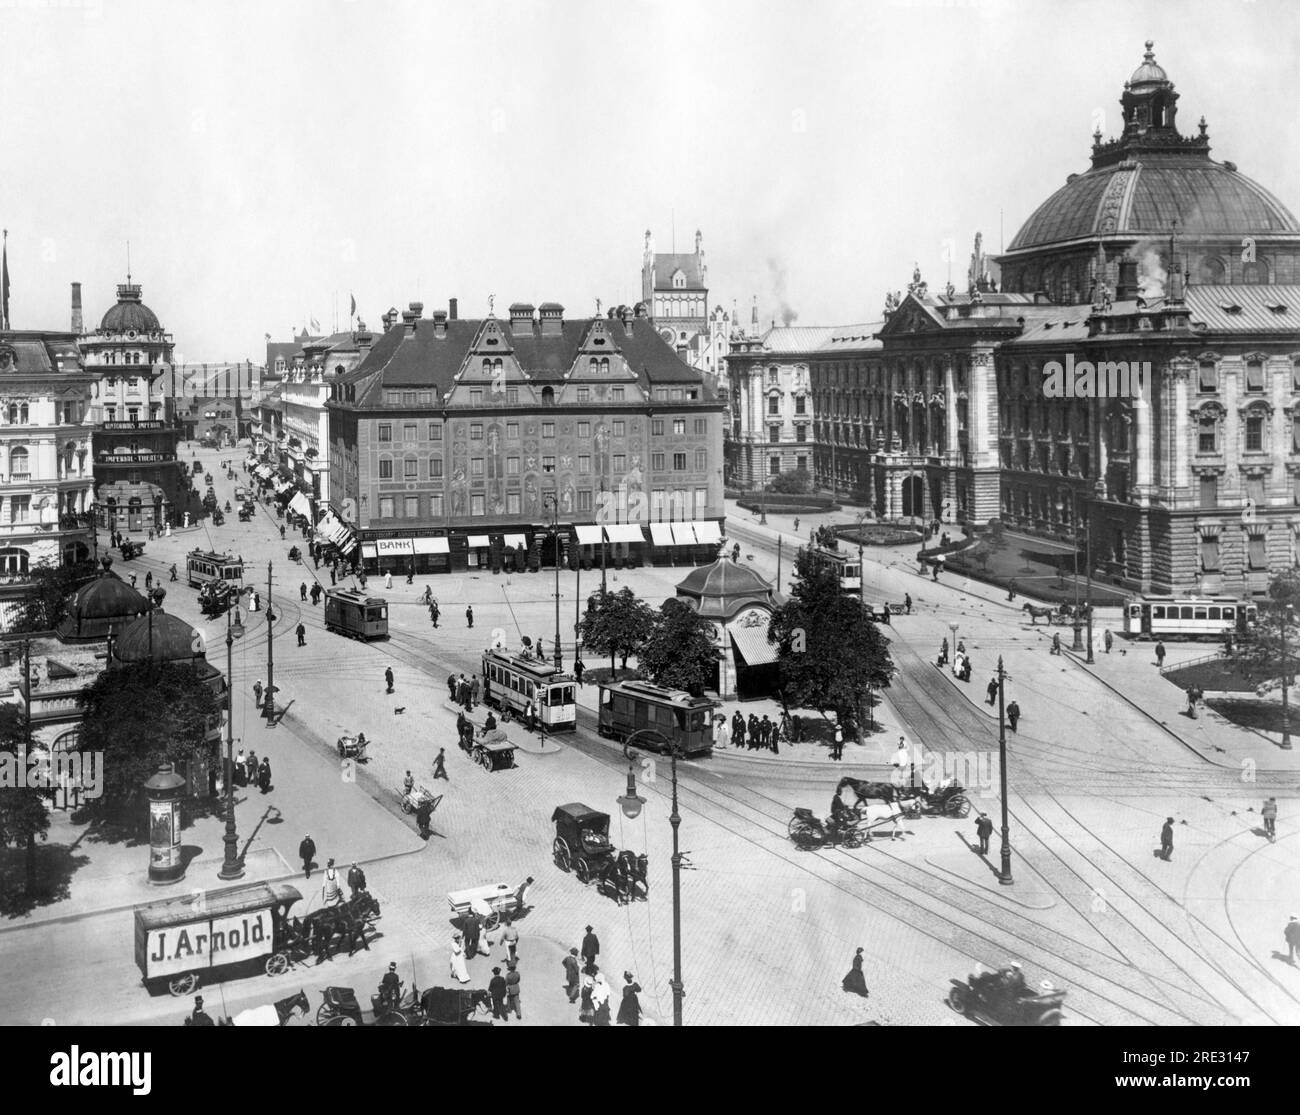 München, Deutschland: 9. November 1923 der öffentliche Platz in München, der das Zentrum des bayerischen Royalistischen Aufstandes gestern Abend war, der anscheinend gescheitert ist. Die "Bierhalle Putsch" wurde von Ludendorff und Hitler geleitet. Stockfoto